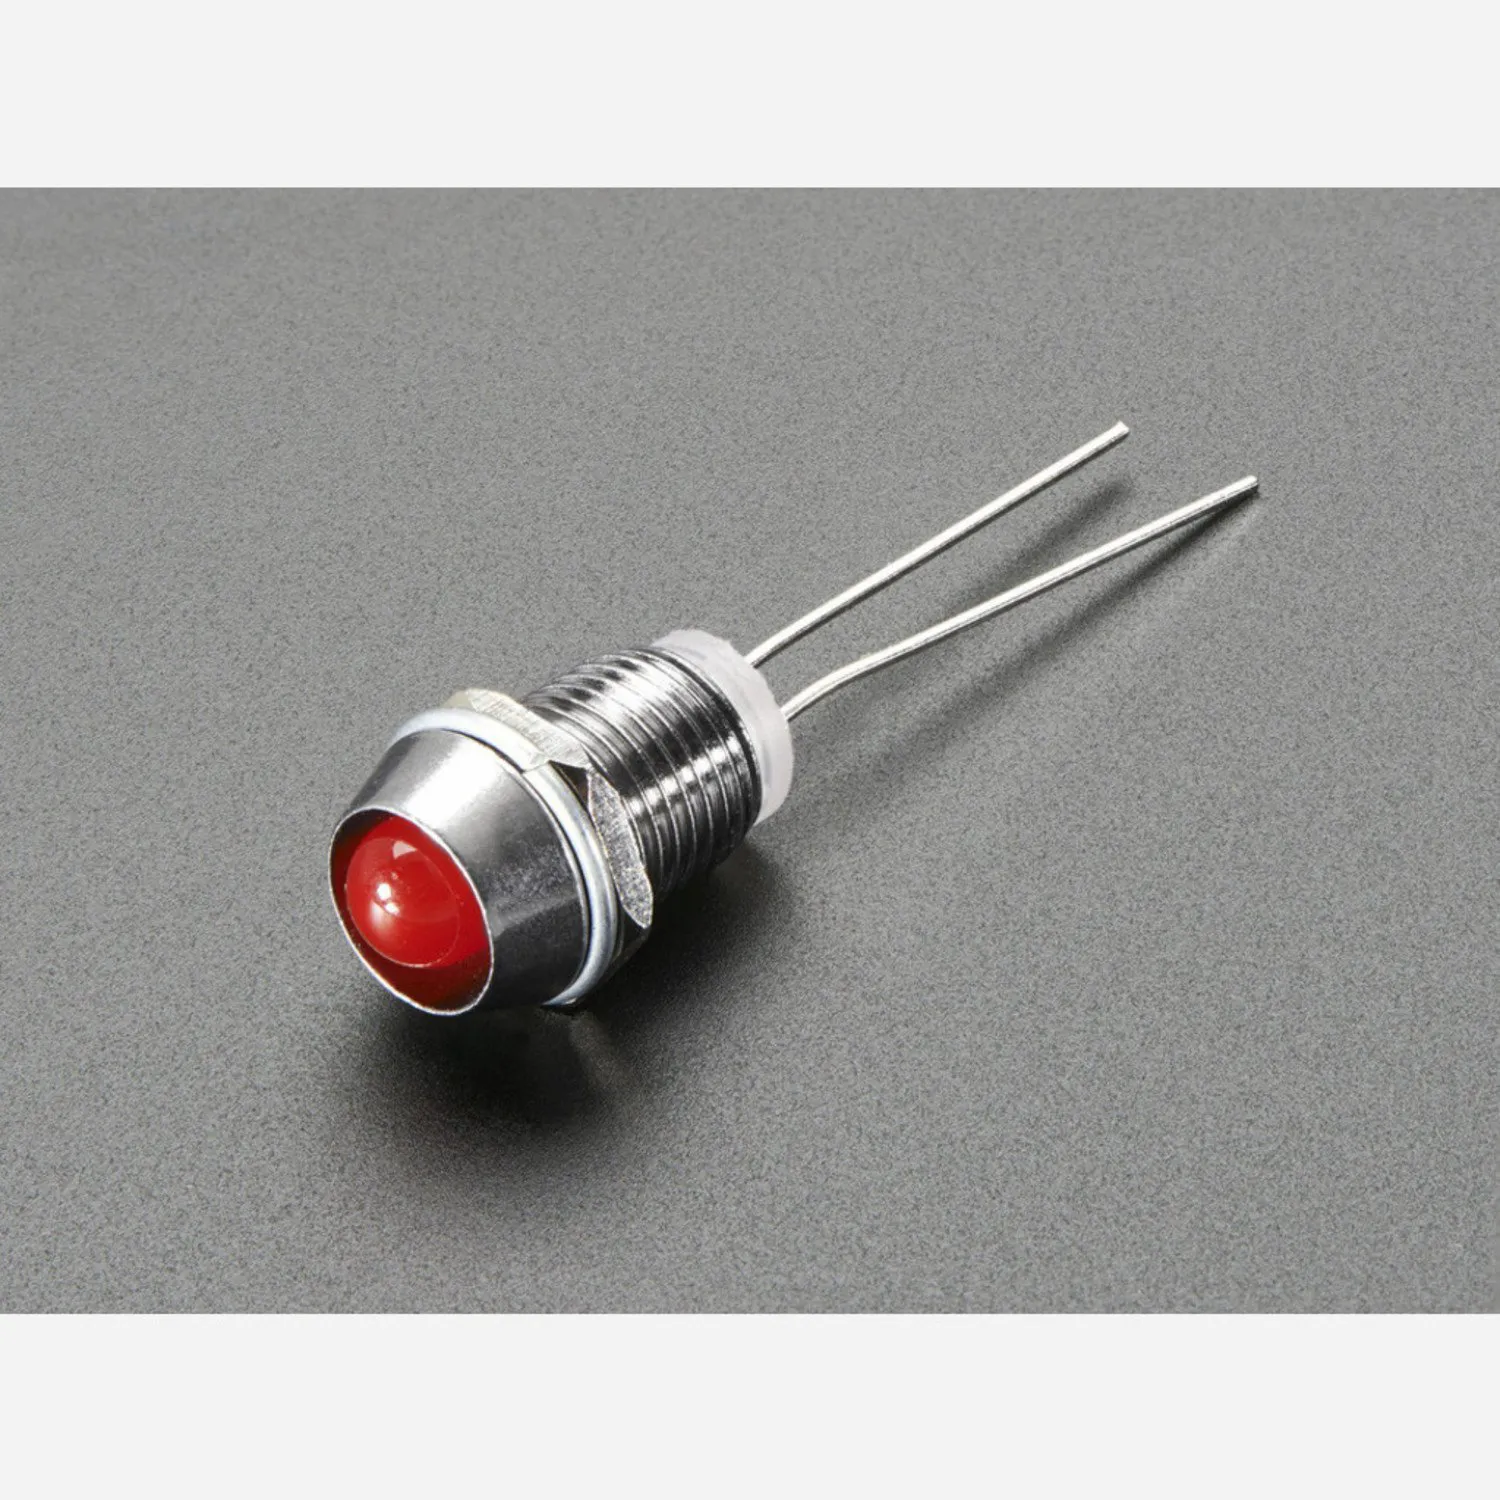 Photo of 5mm Chromed Metal Narrow Bevel LED Holder - Pack of 5